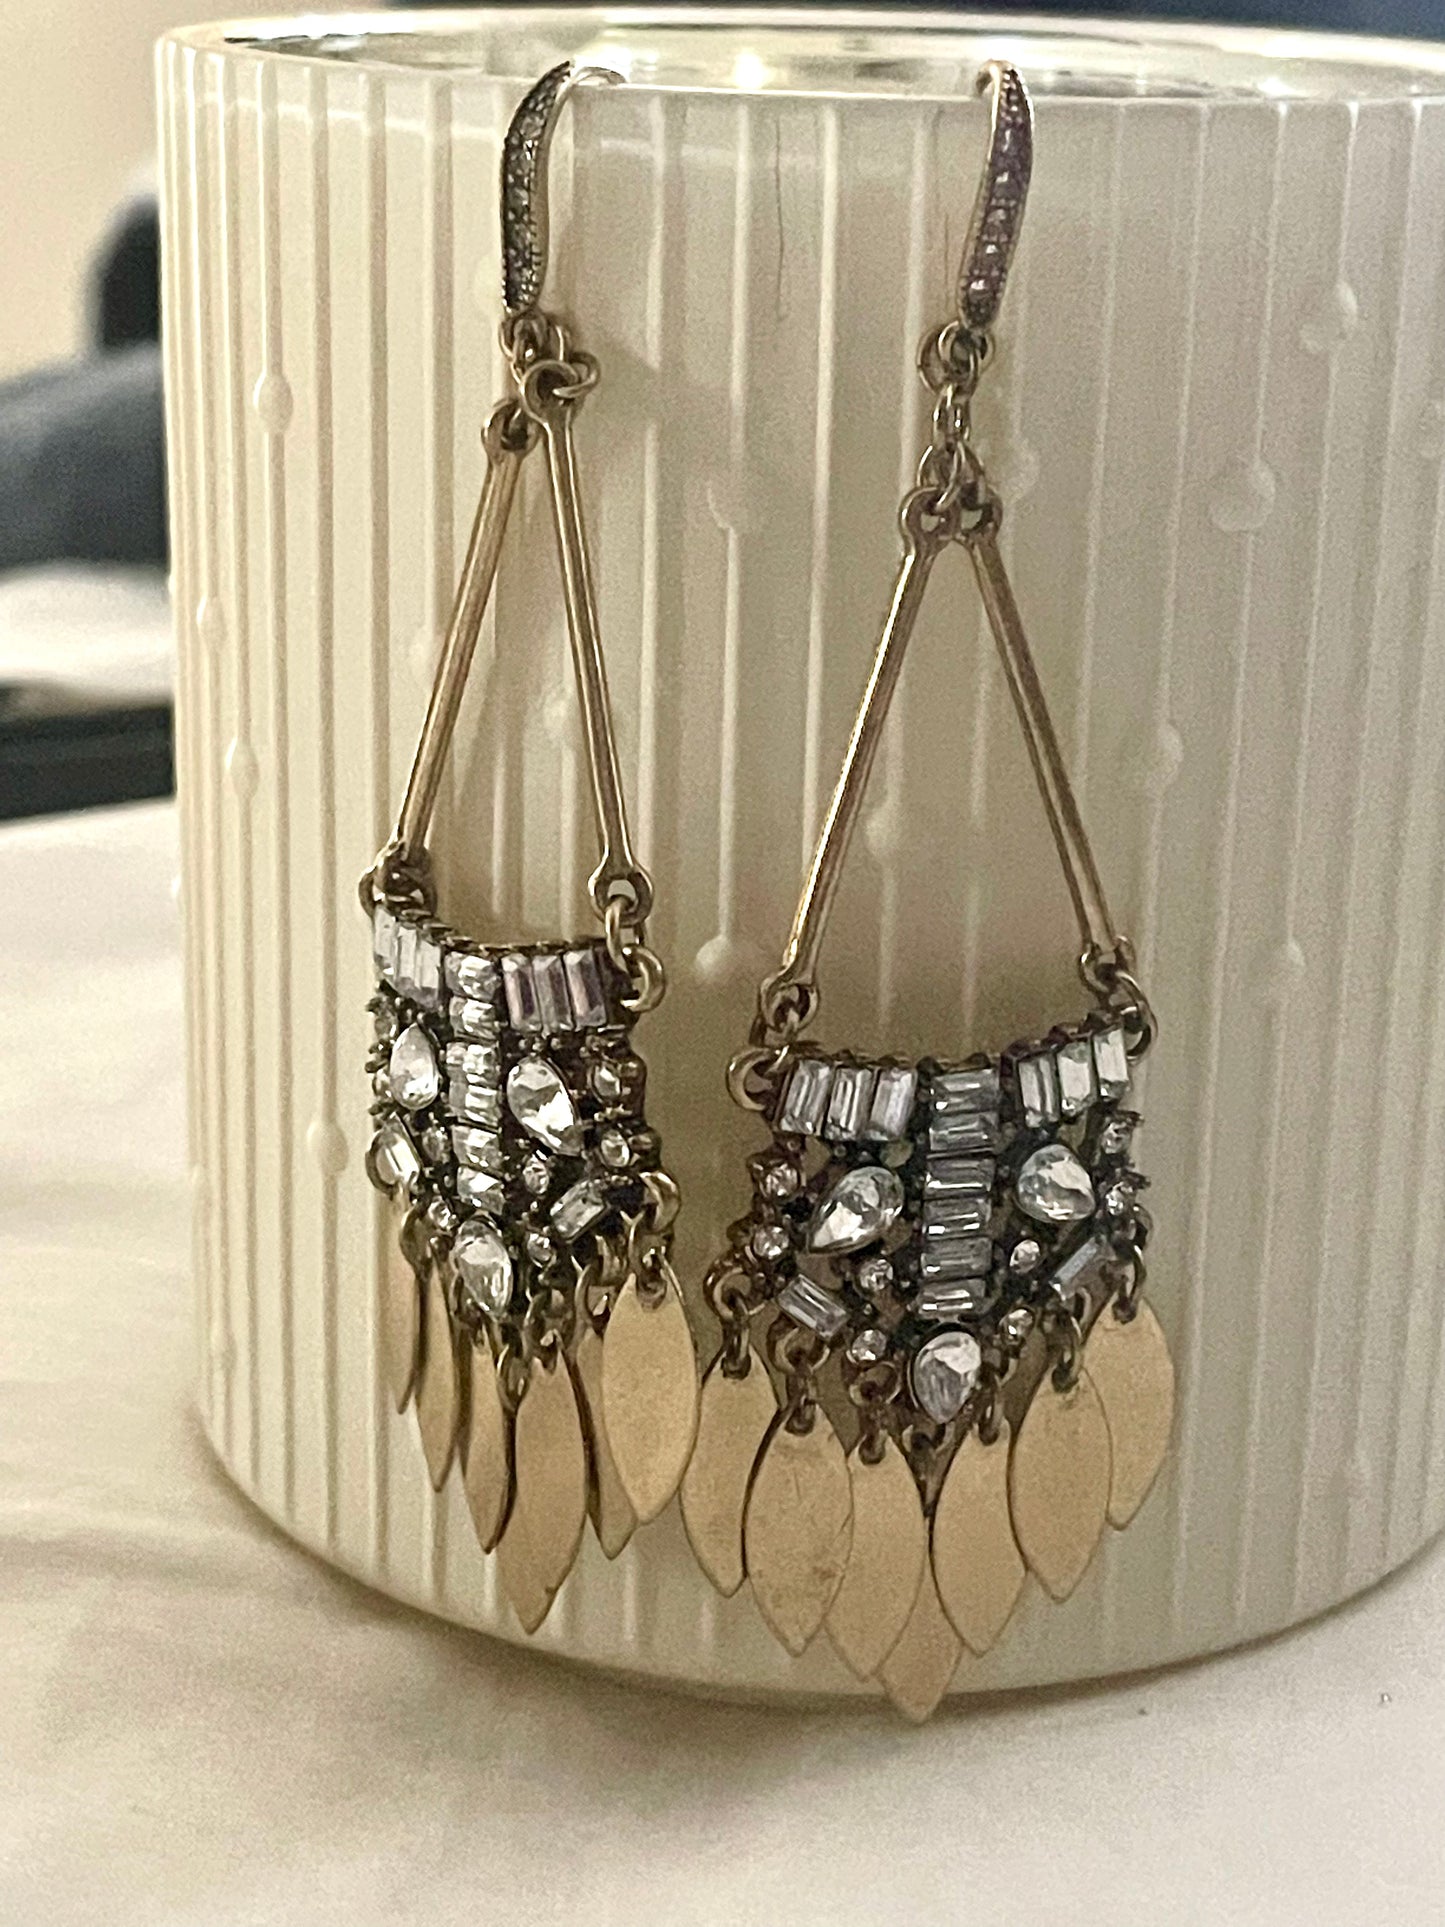 Lila earrings